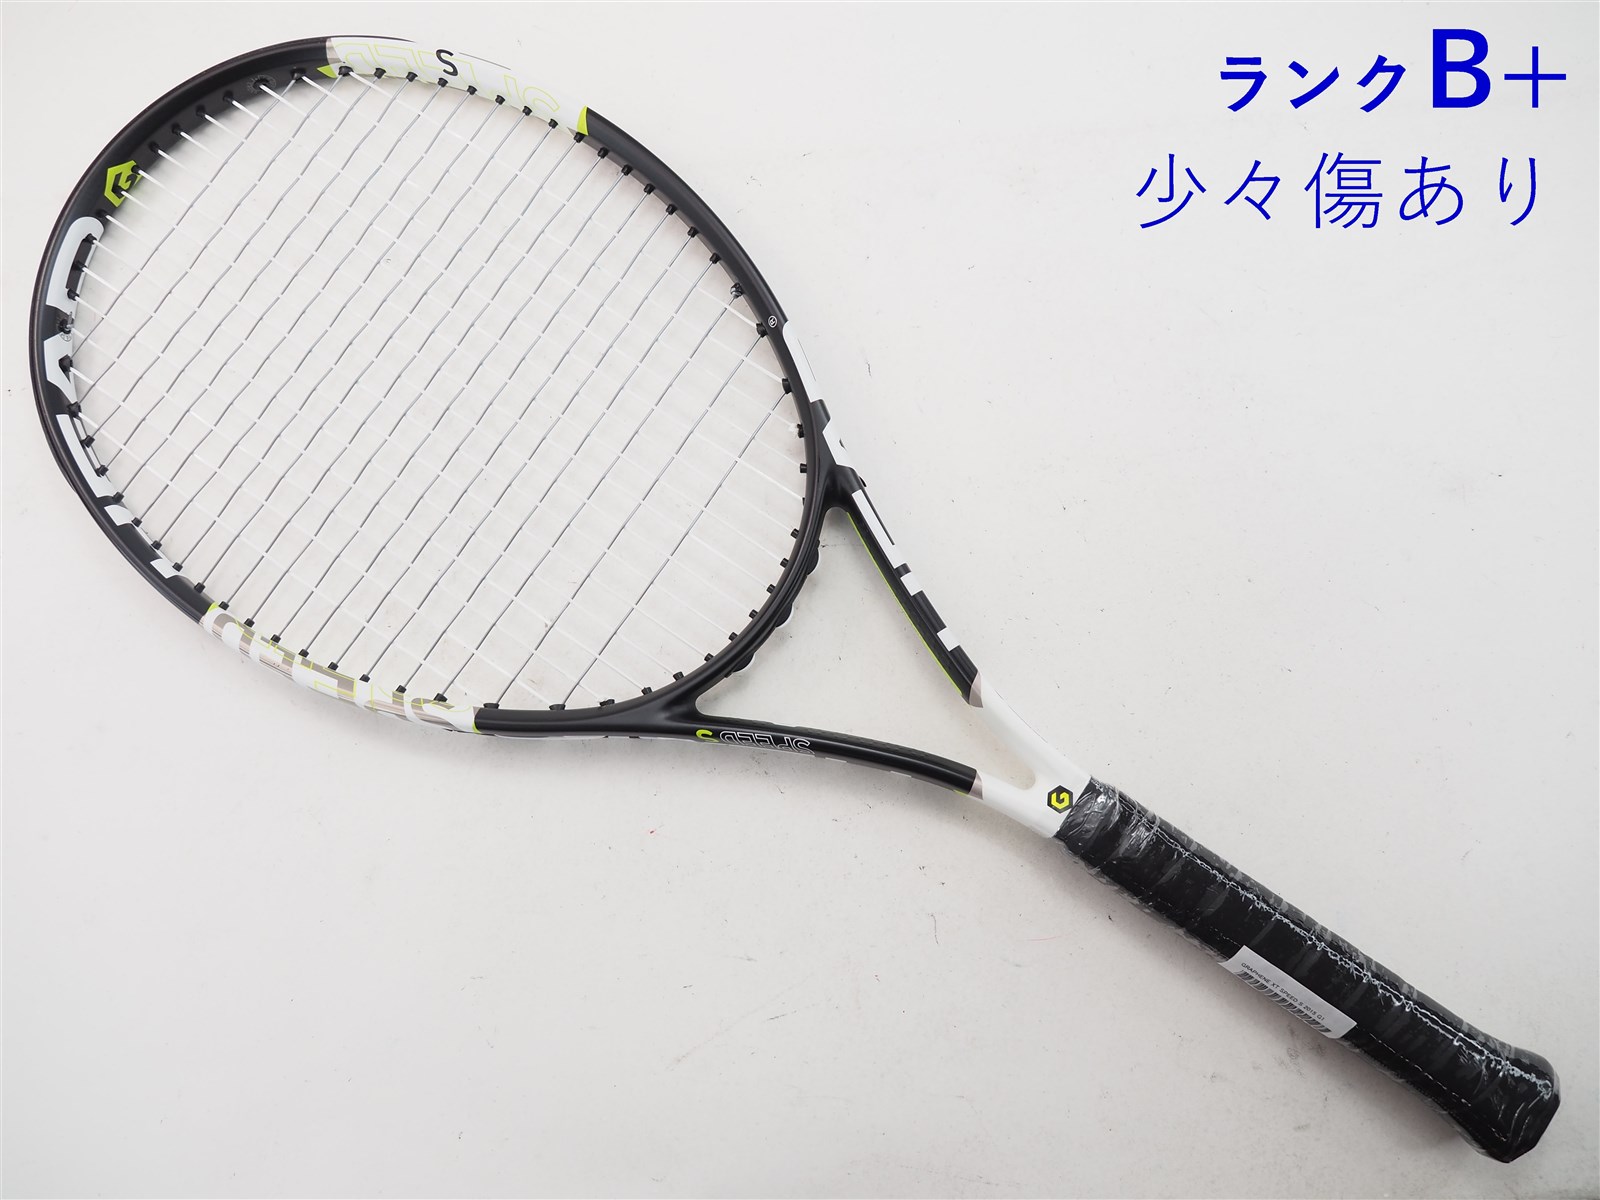 新品未使用 テニスラケット HEAD グラフィン360+ スピードPro G2ラケット(硬式用)